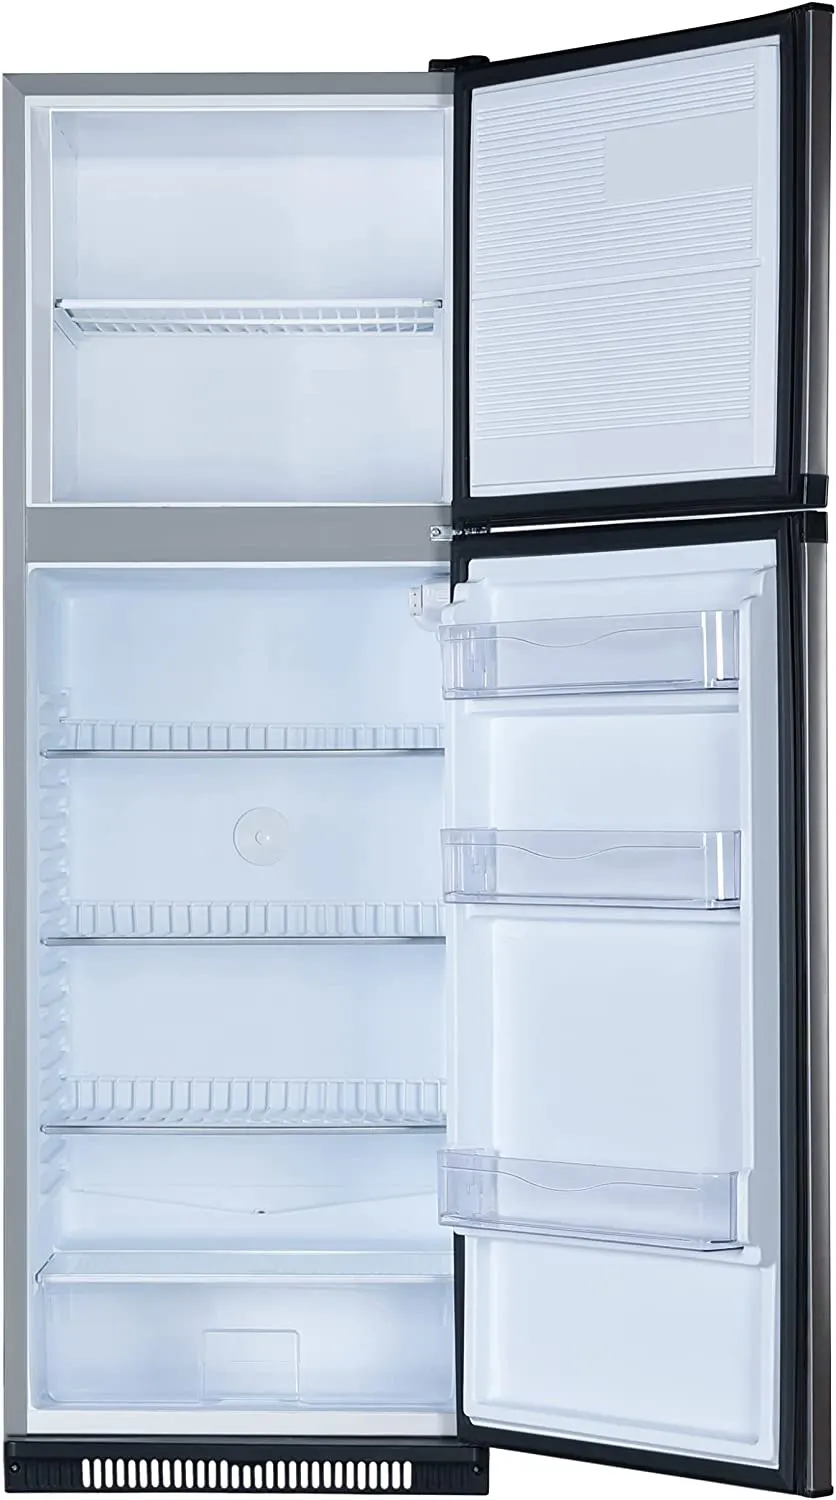 Passap Refrigerator, Defrost, 340 Liter, 2 Door, Silver, FG390